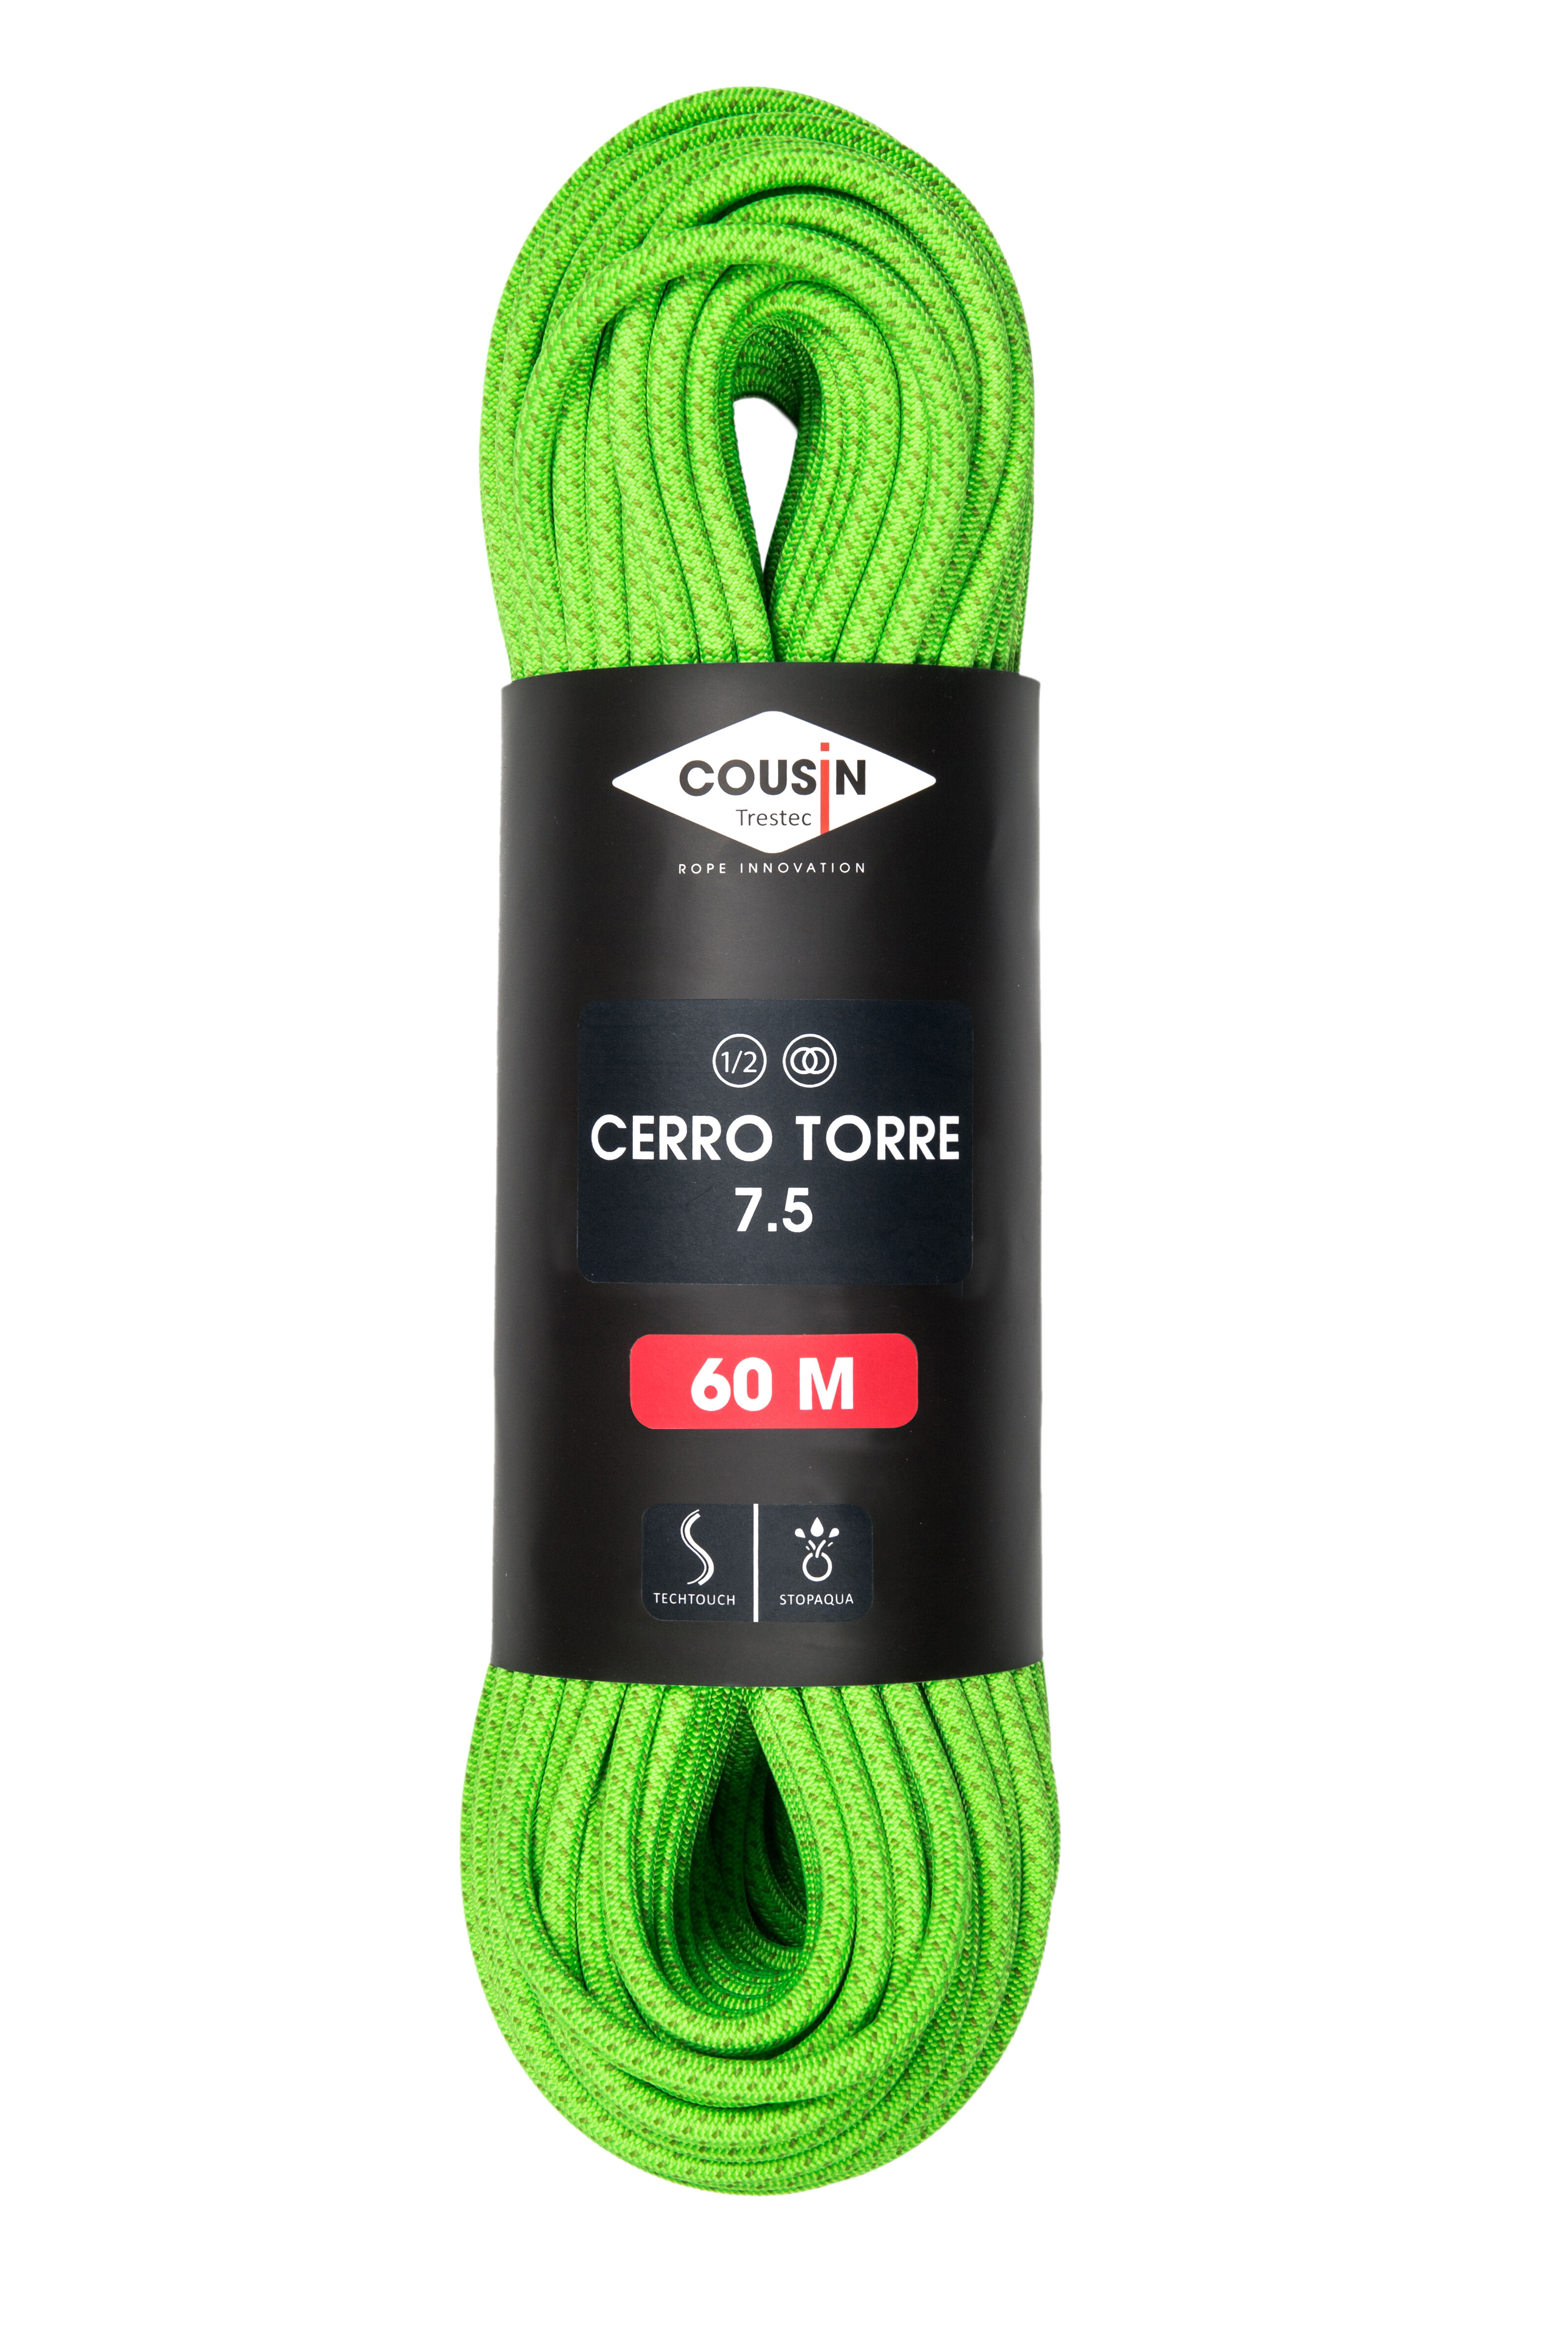 Cousin Trestec Cerro Torre 7.5 - Cuerda doble